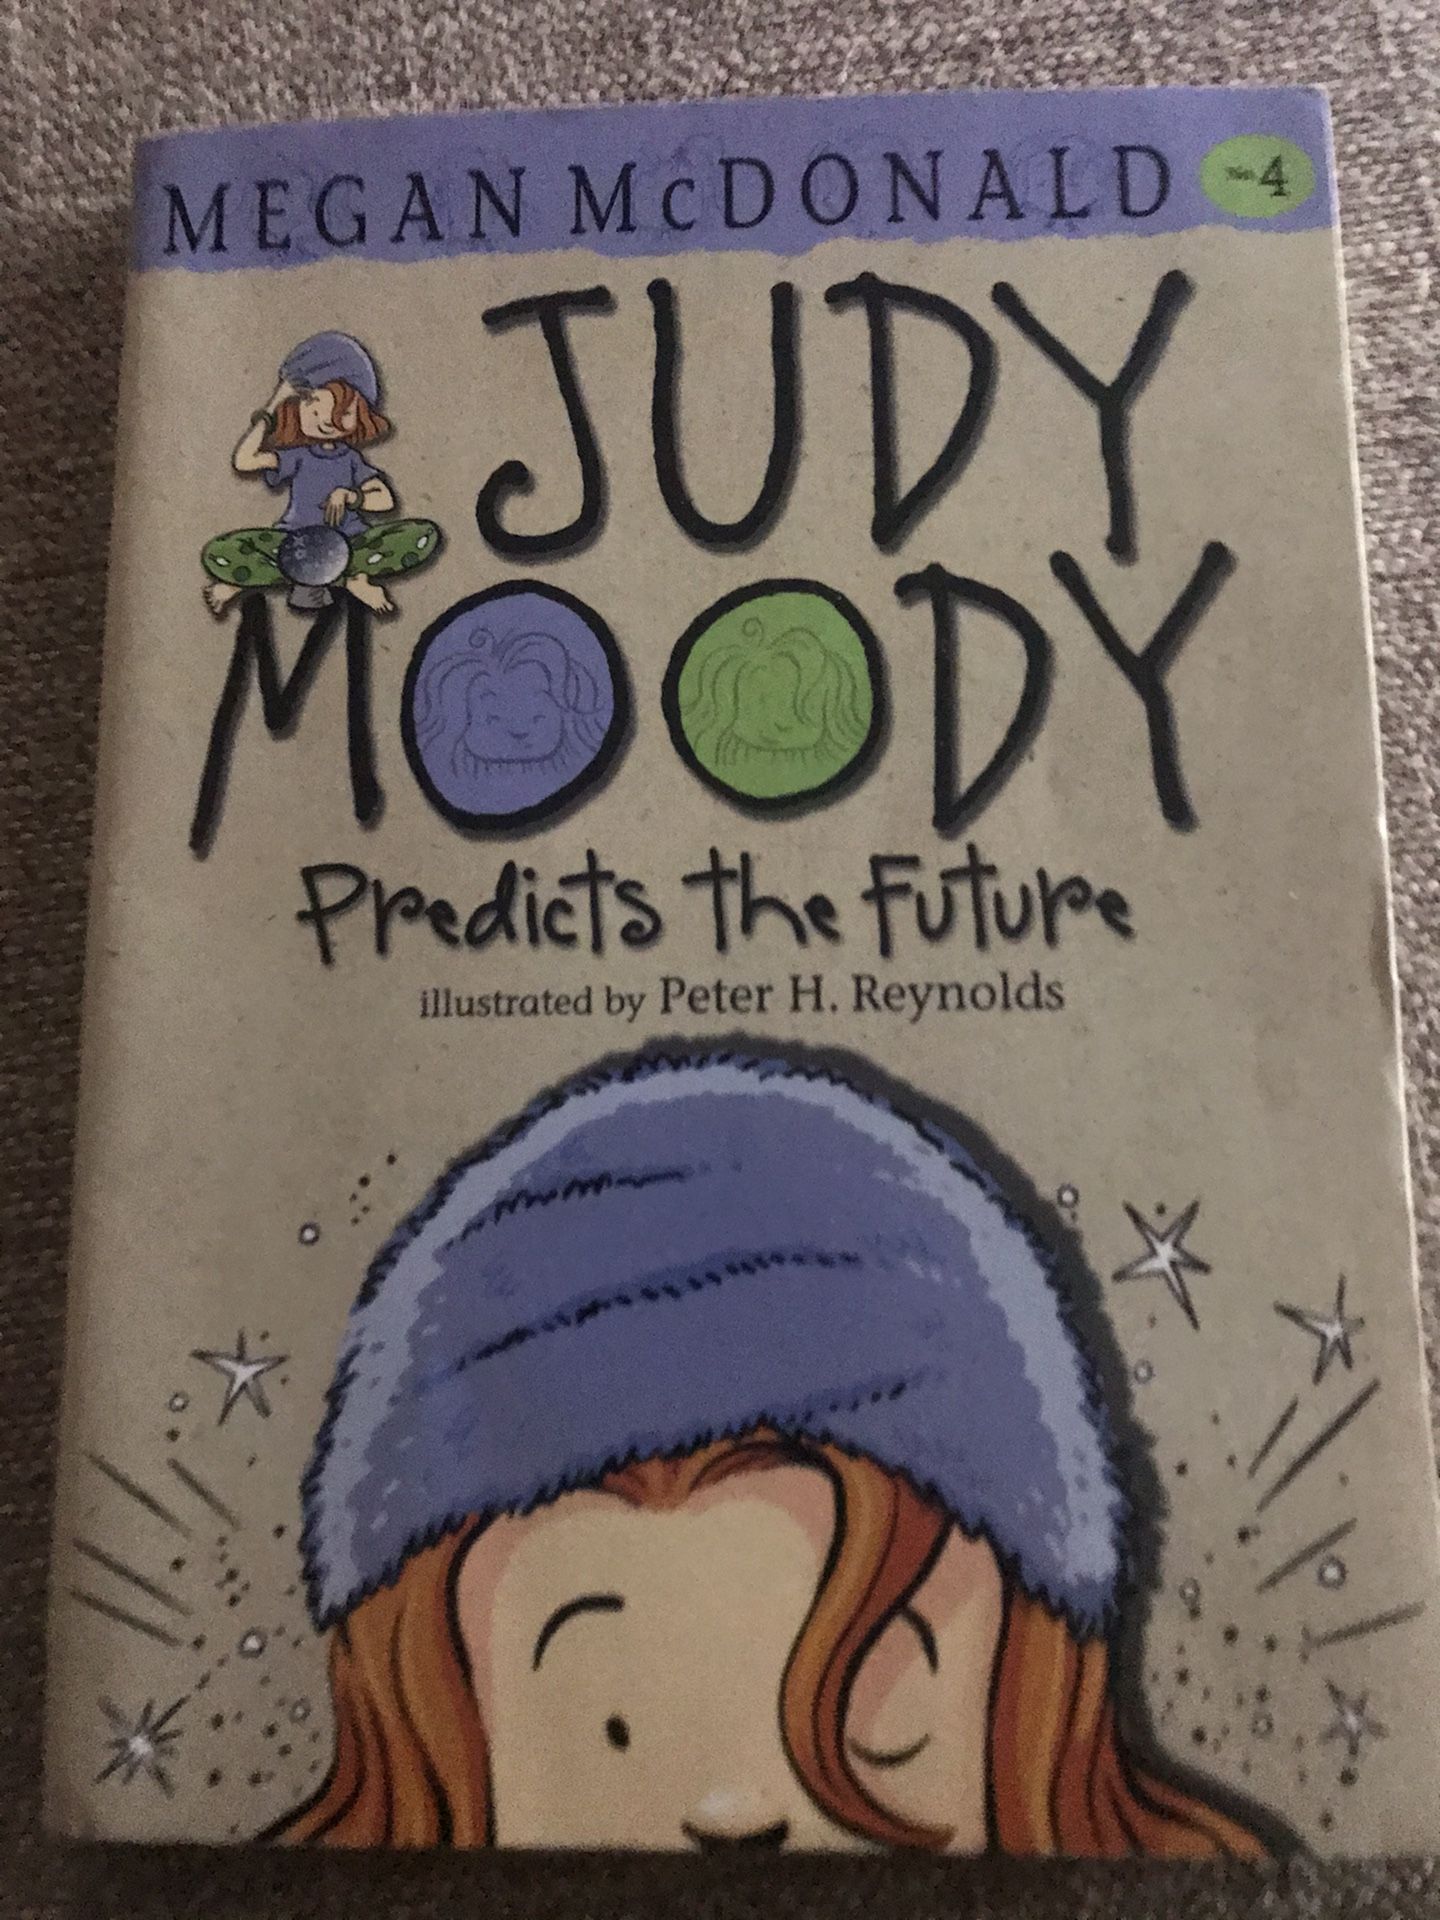 Judy Moody Predicts the Future book by Megan McDonald